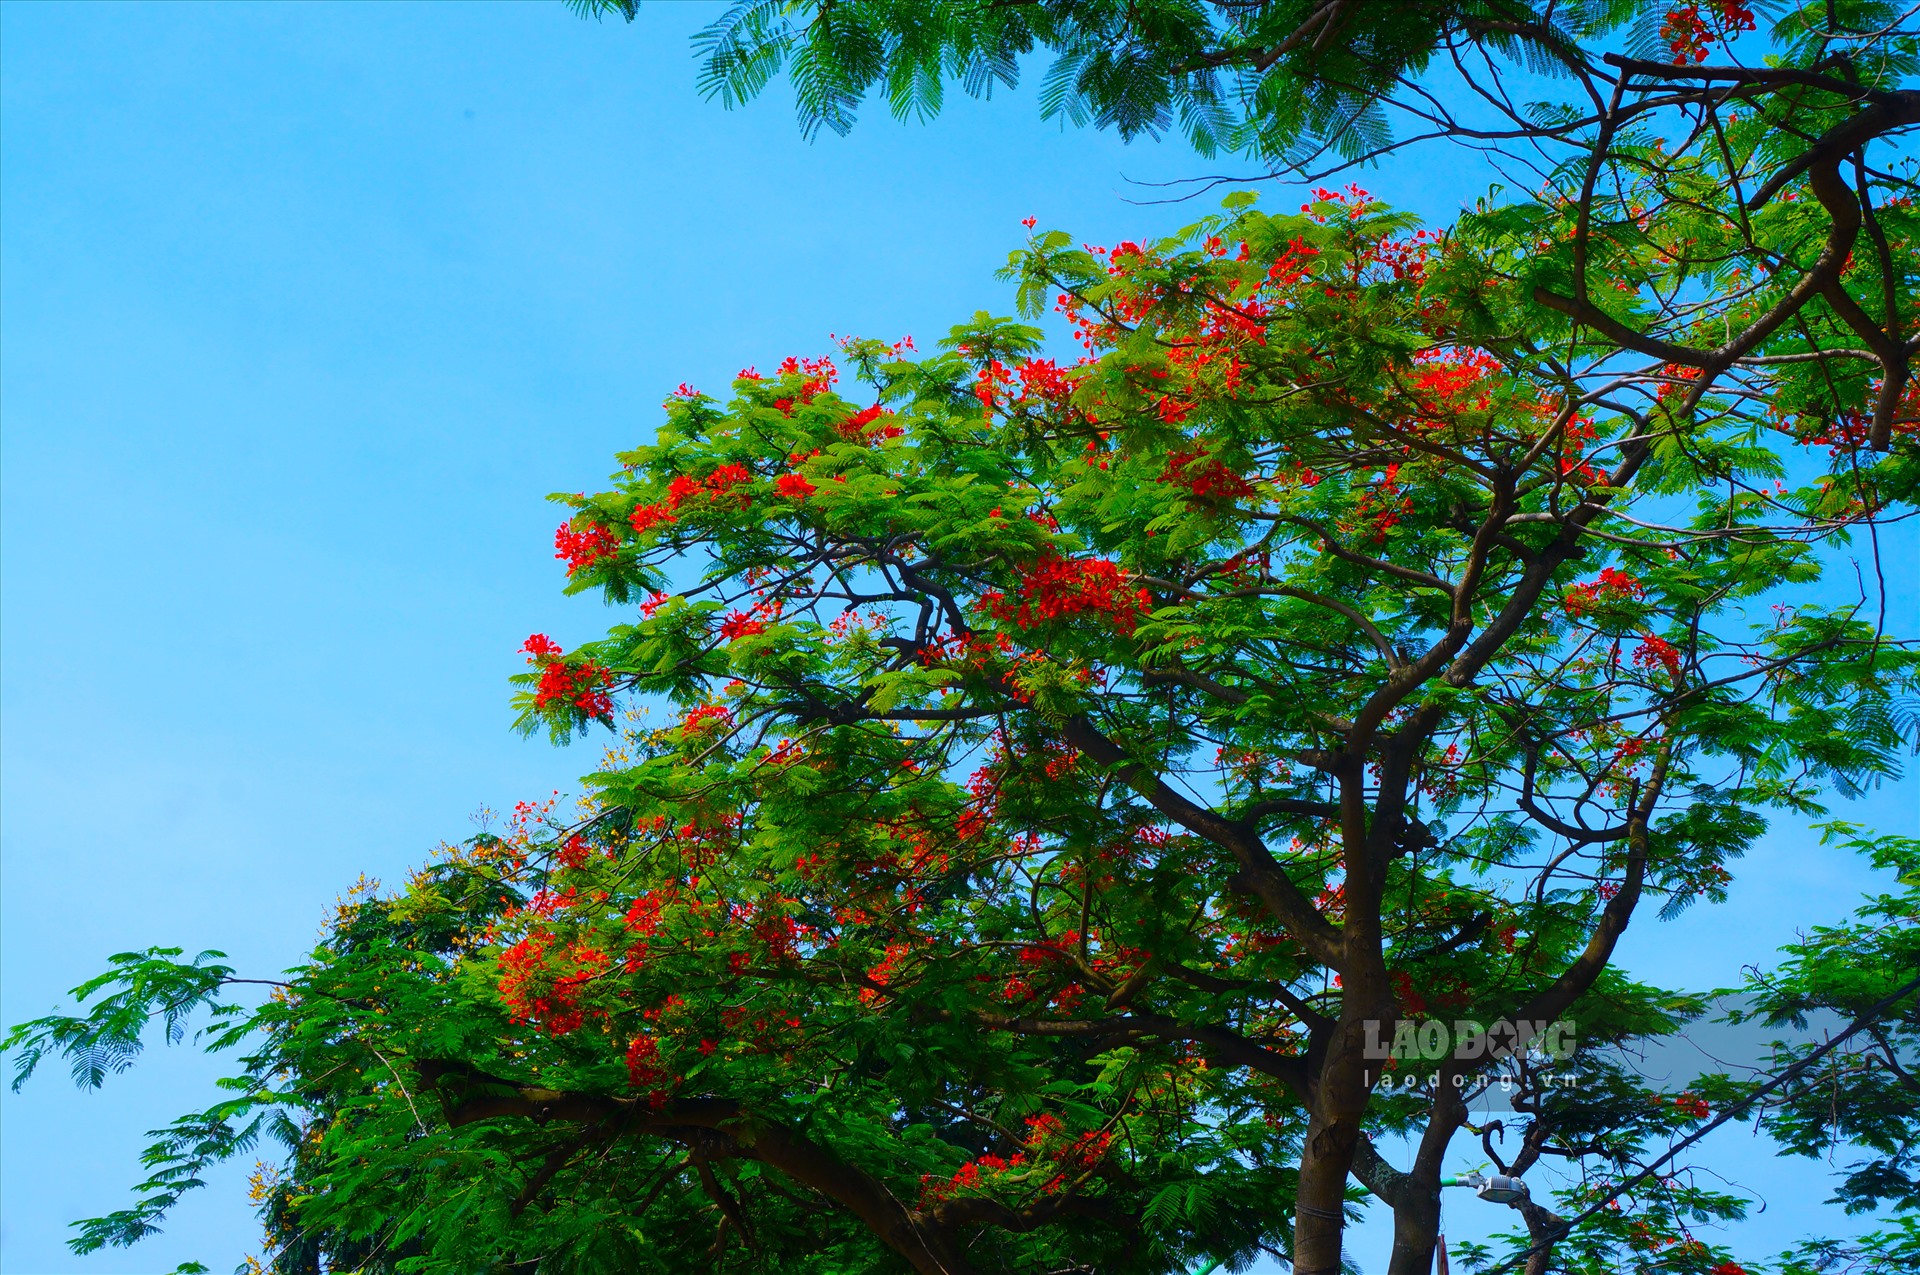 Con đường hoa phượng là một trong những địa điểm thú vị tại Việt Nam. Những hàng cây phượng đỏ bừng tạo nên một cảnh quan đẹp mê hồn, đặc biệt là trong mùa hè với những cánh hoa rực rỡ. Hãy cùng chiêm ngưỡng những hình ảnh đẹp để cảm nhận được sự lãng mạn và tình yêu của con đường hoa phượng.